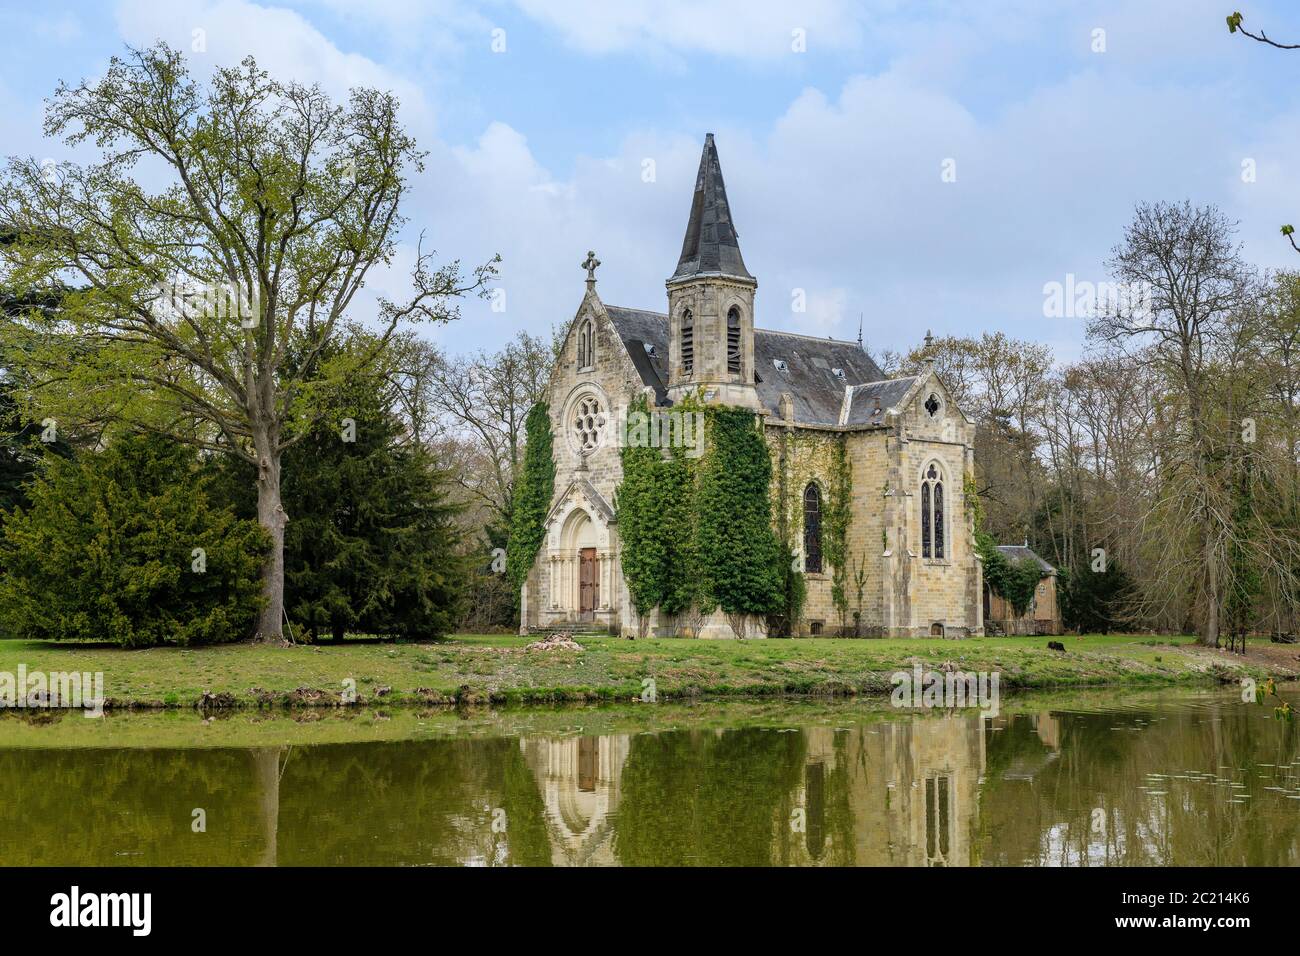 France, Loiret, Sologne, La Ferte Saint Aubin, Chateau de la Ferte, chapel of the castle // France, Loiret (45), Sologne, La Ferté-Saint-Aubin, châtea Stock Photo